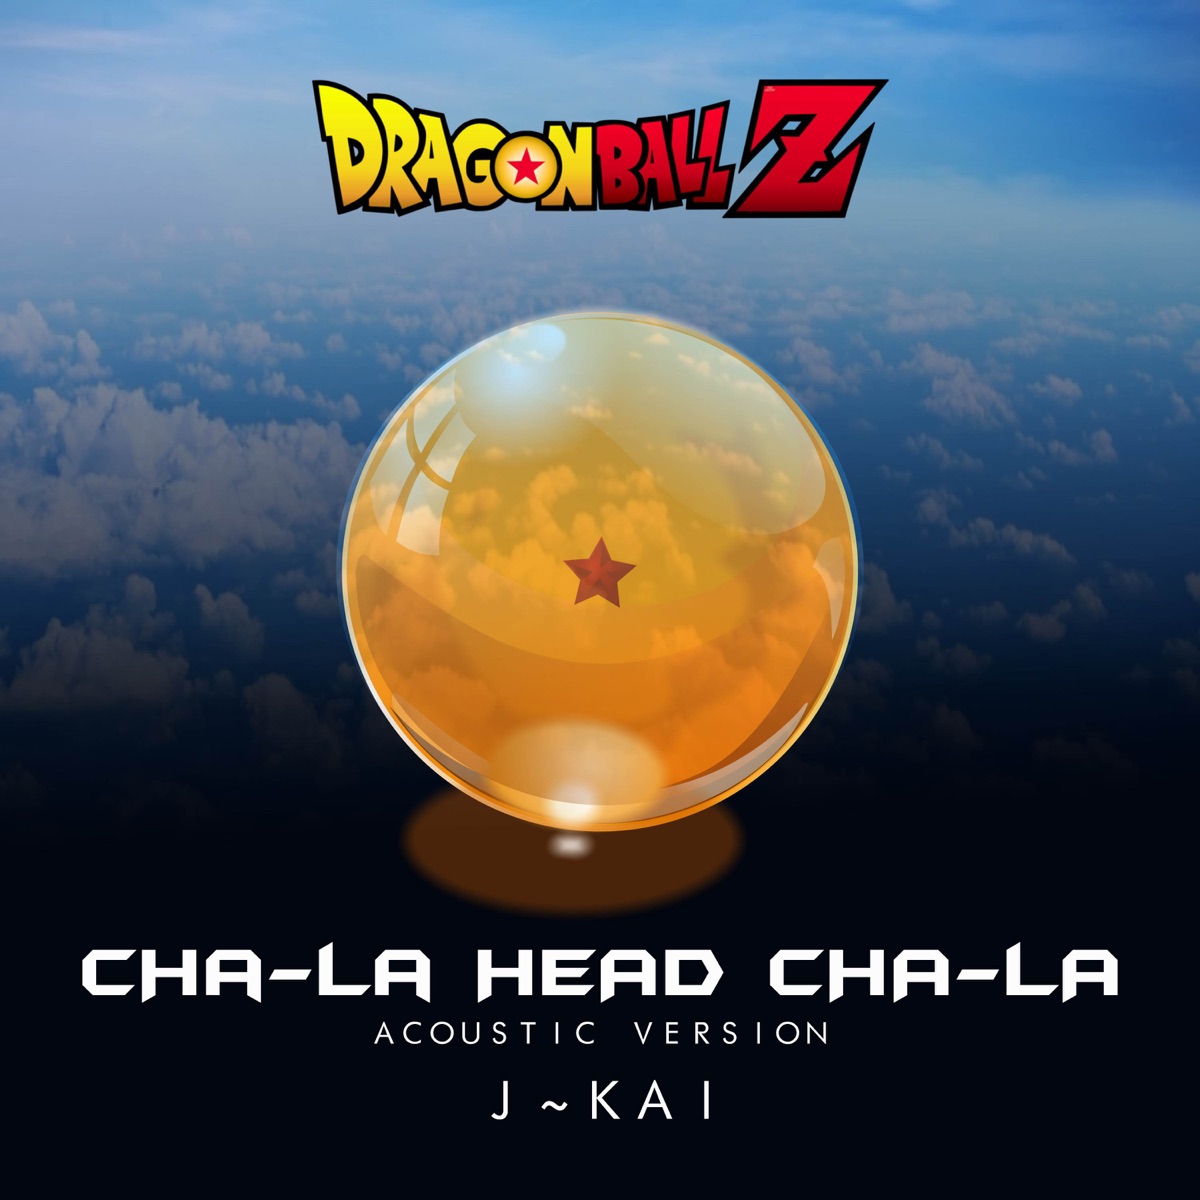 Todas as aberturas de Dragon Ball Brasil Atualizado cd Completo em